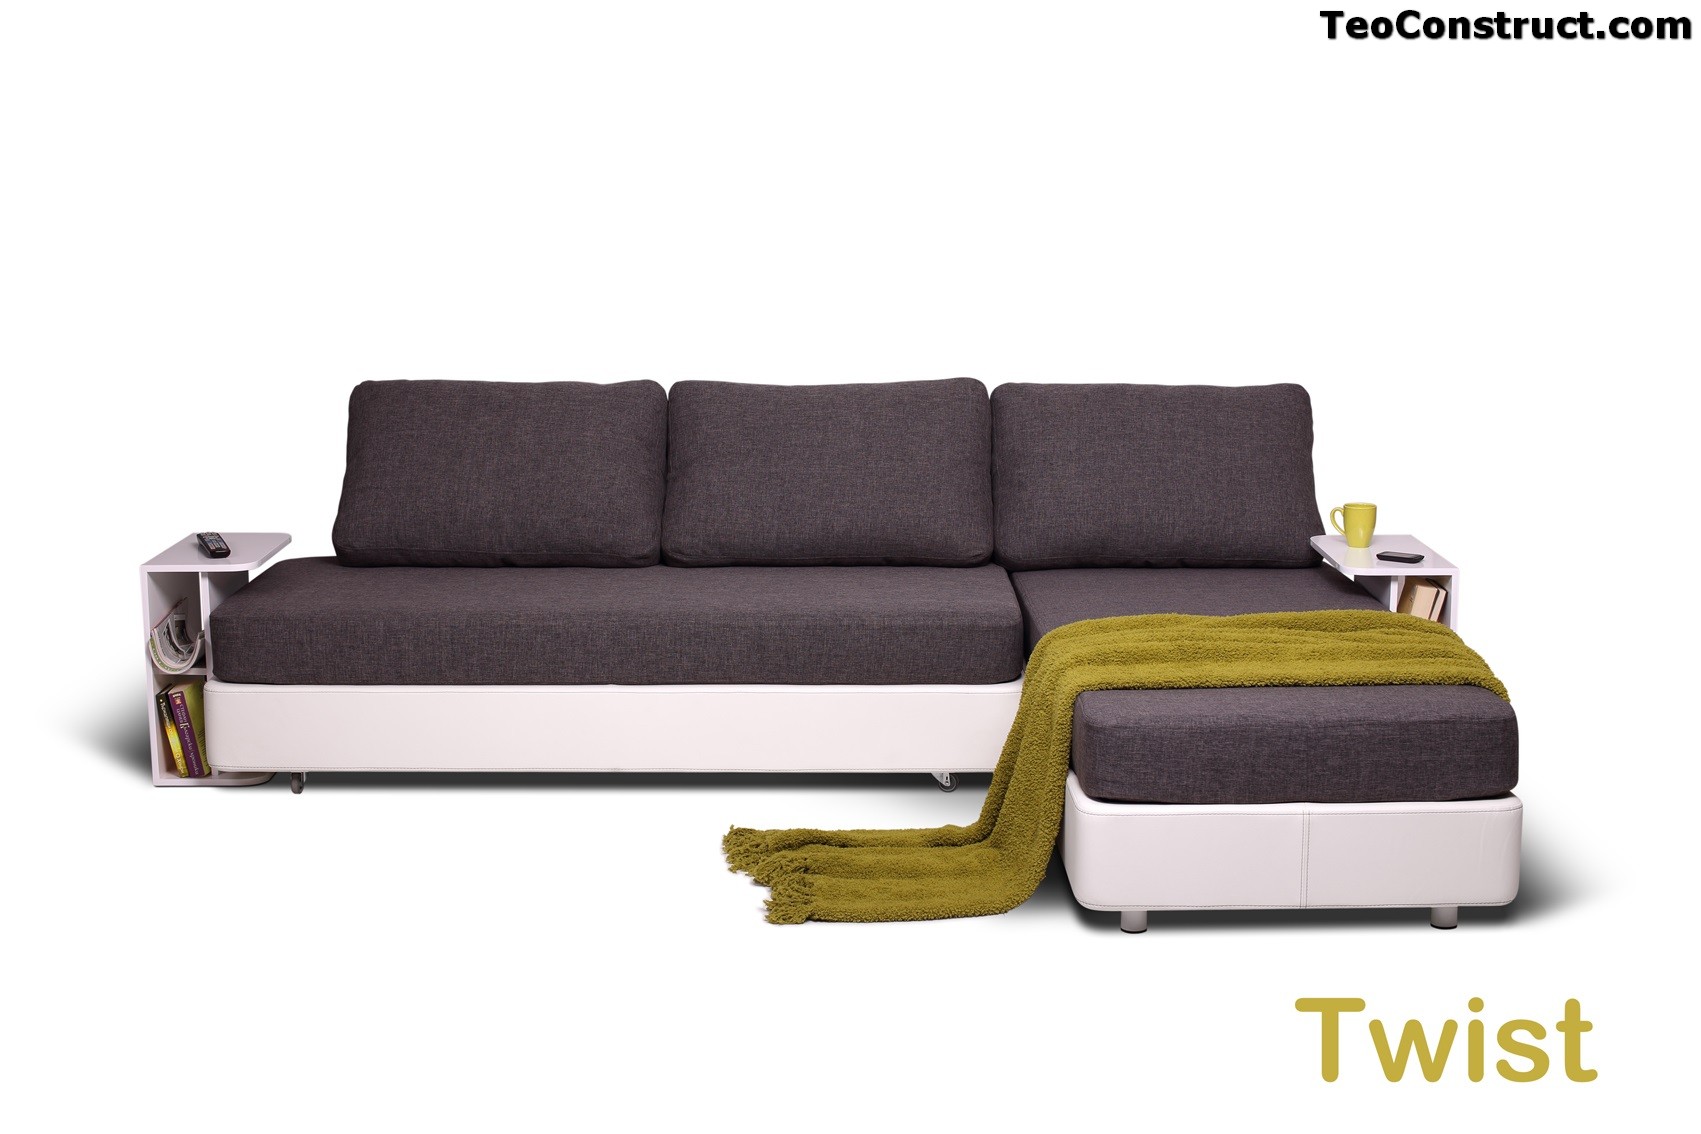 Canapea Twist pentru apartament01